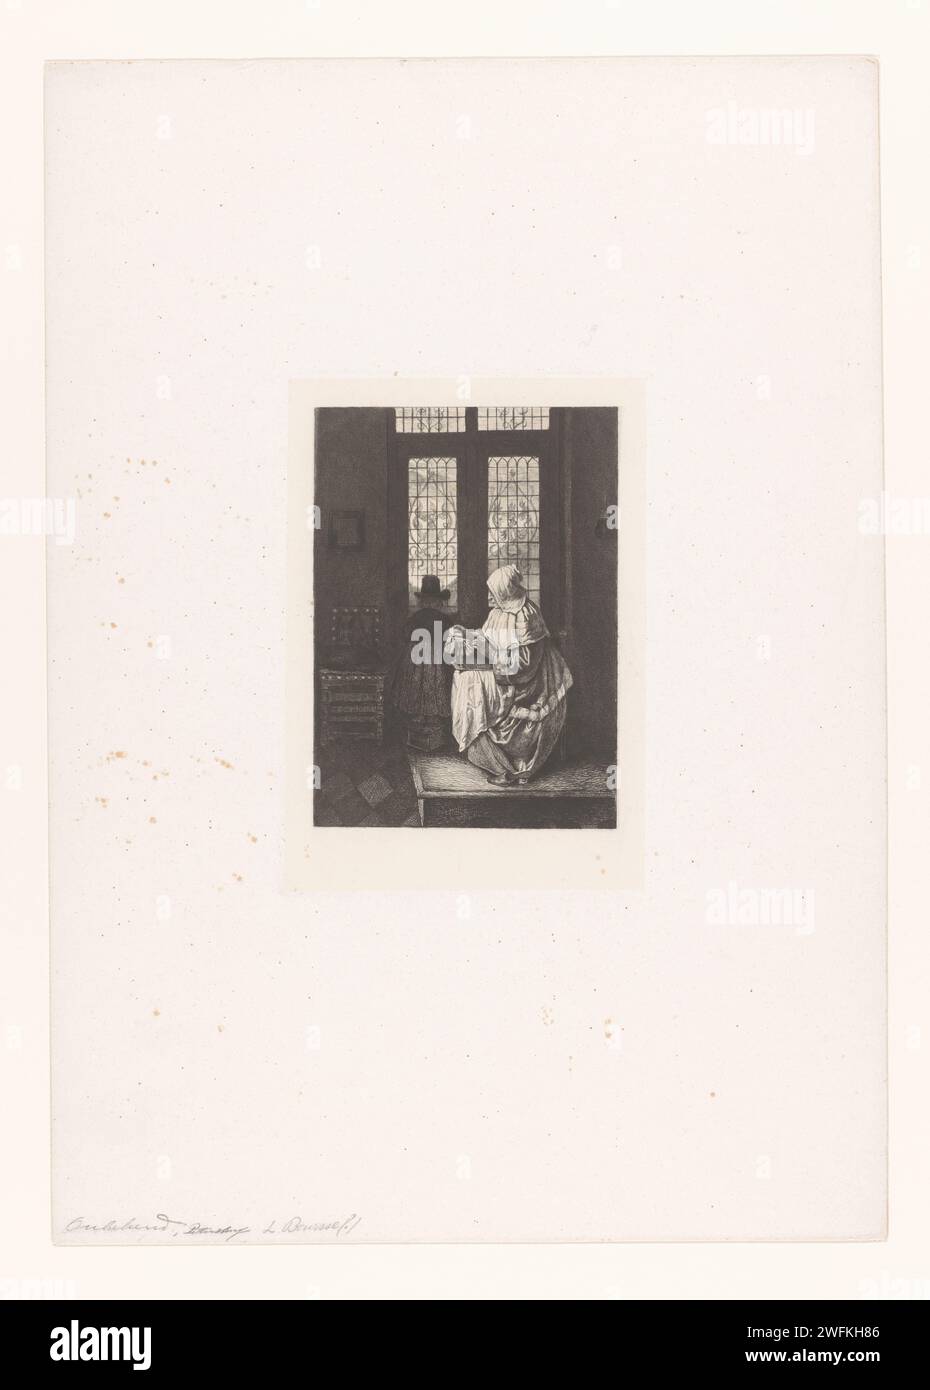 Interior met Cantzing Versewing A Man aan Het Raam, Niholay Monthly Moslov, Movelov, Aftailav, 1857 - 1914 papier imprimé. gravure / fabrication de lacets à pointe sèche. dentelle Banque D'Images